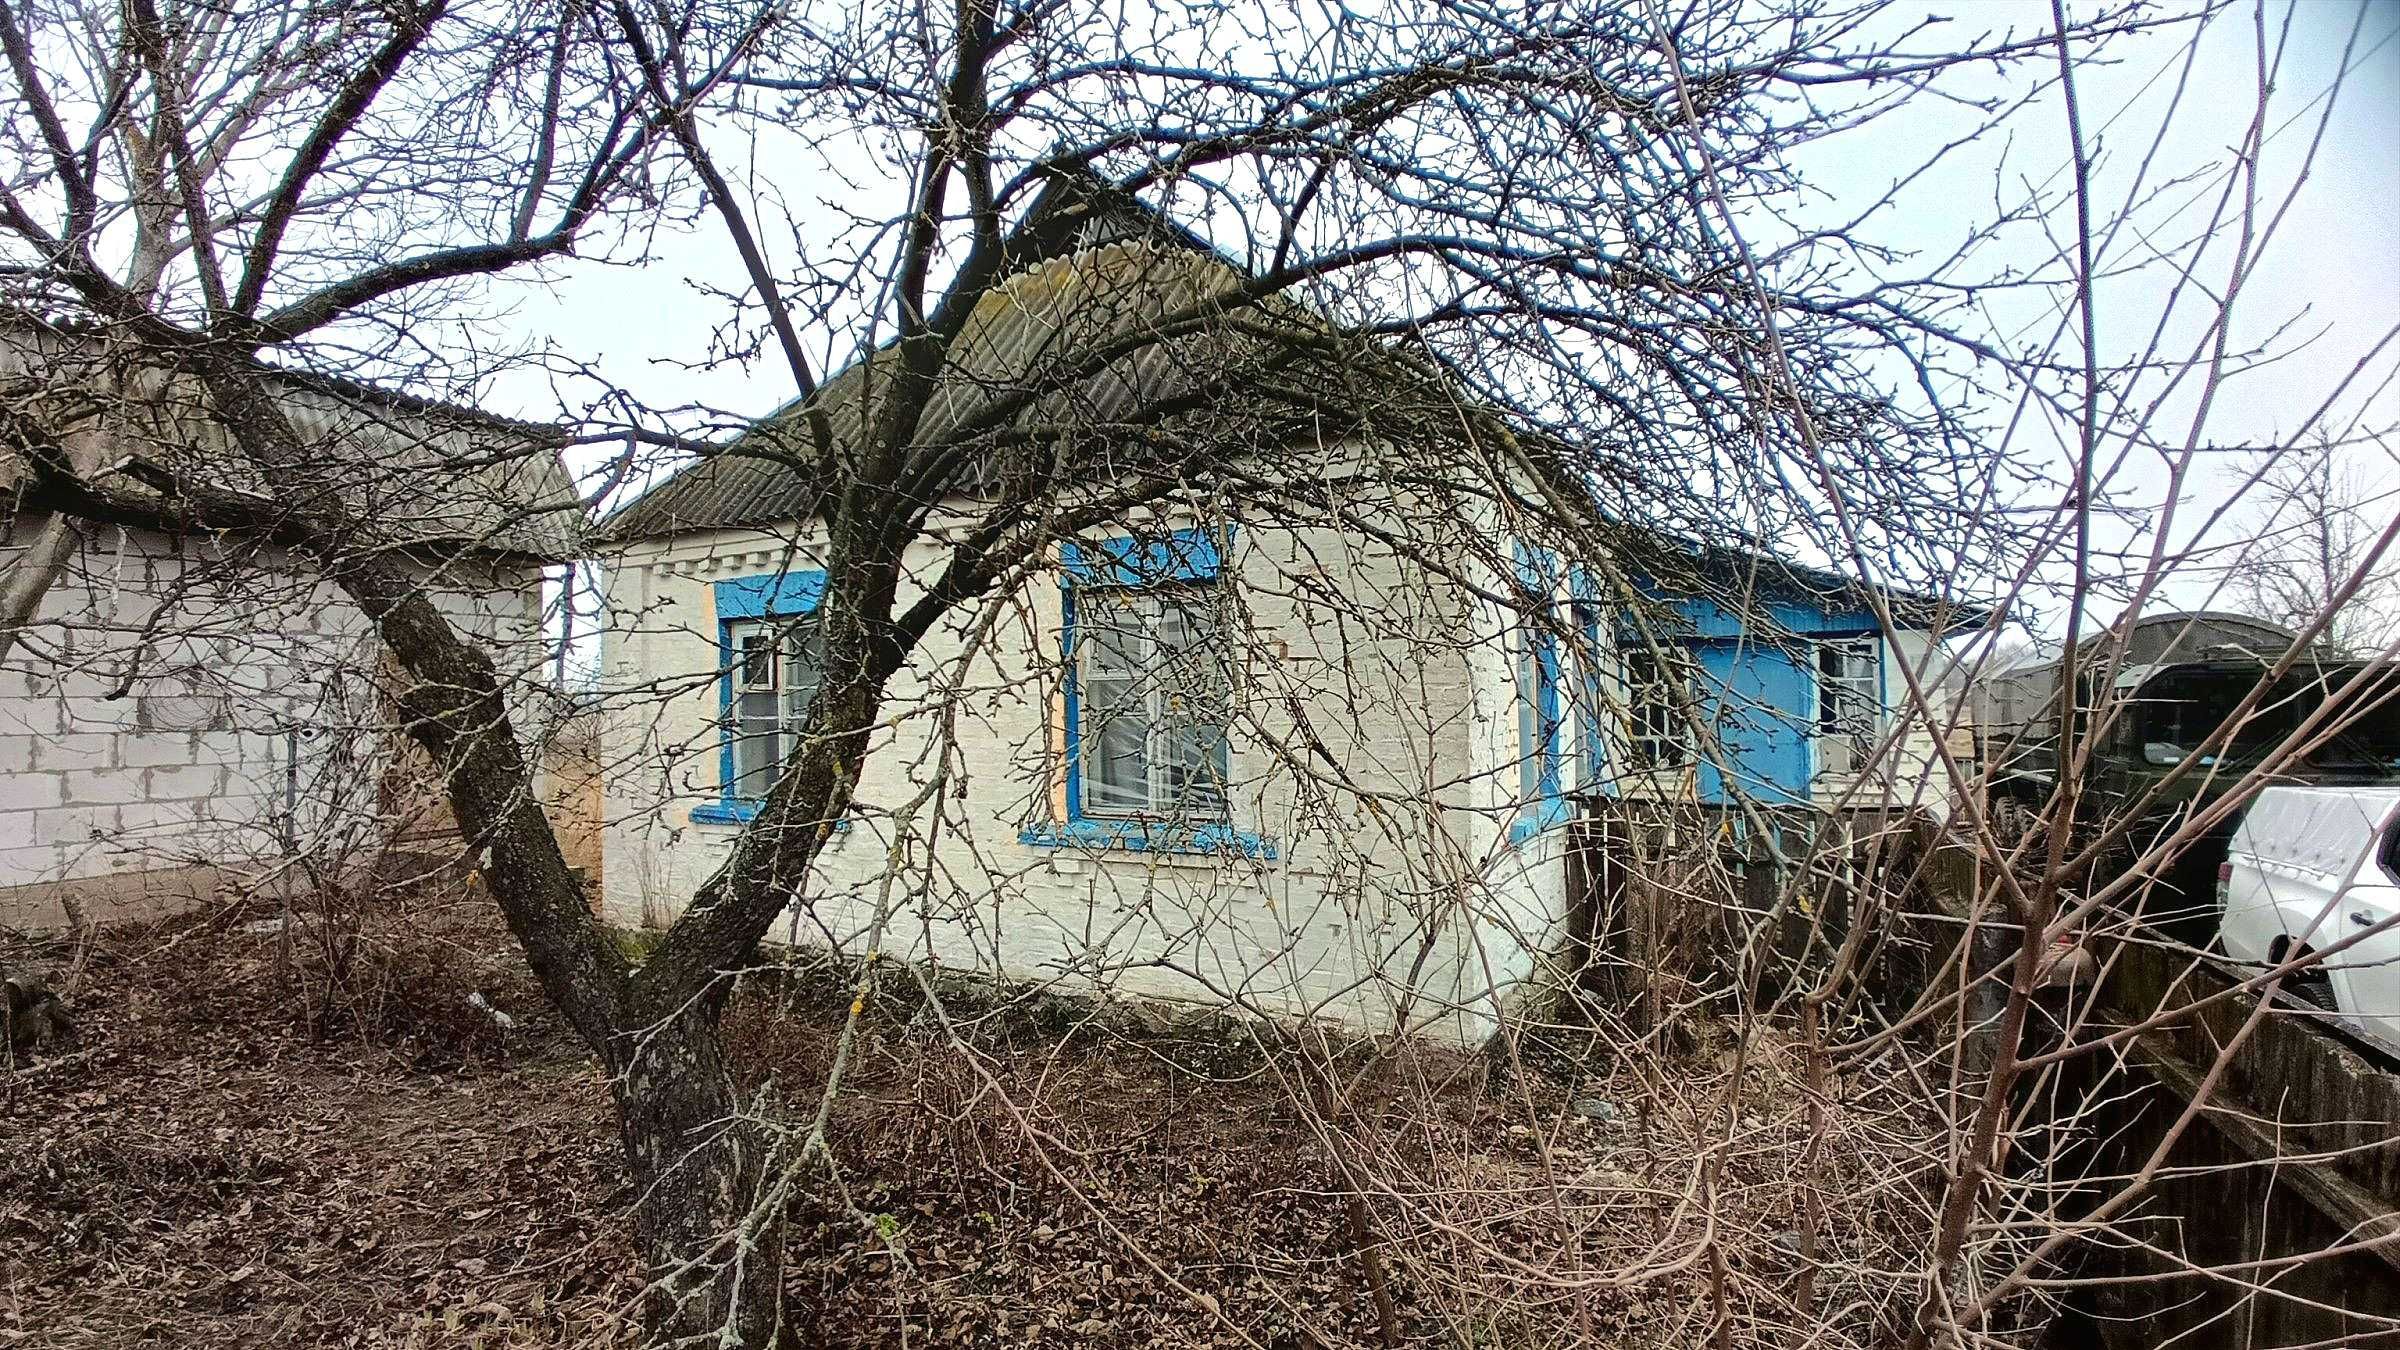 Продам жилий,цегляний будинок з вихідом до озера.Від Києва 45км.